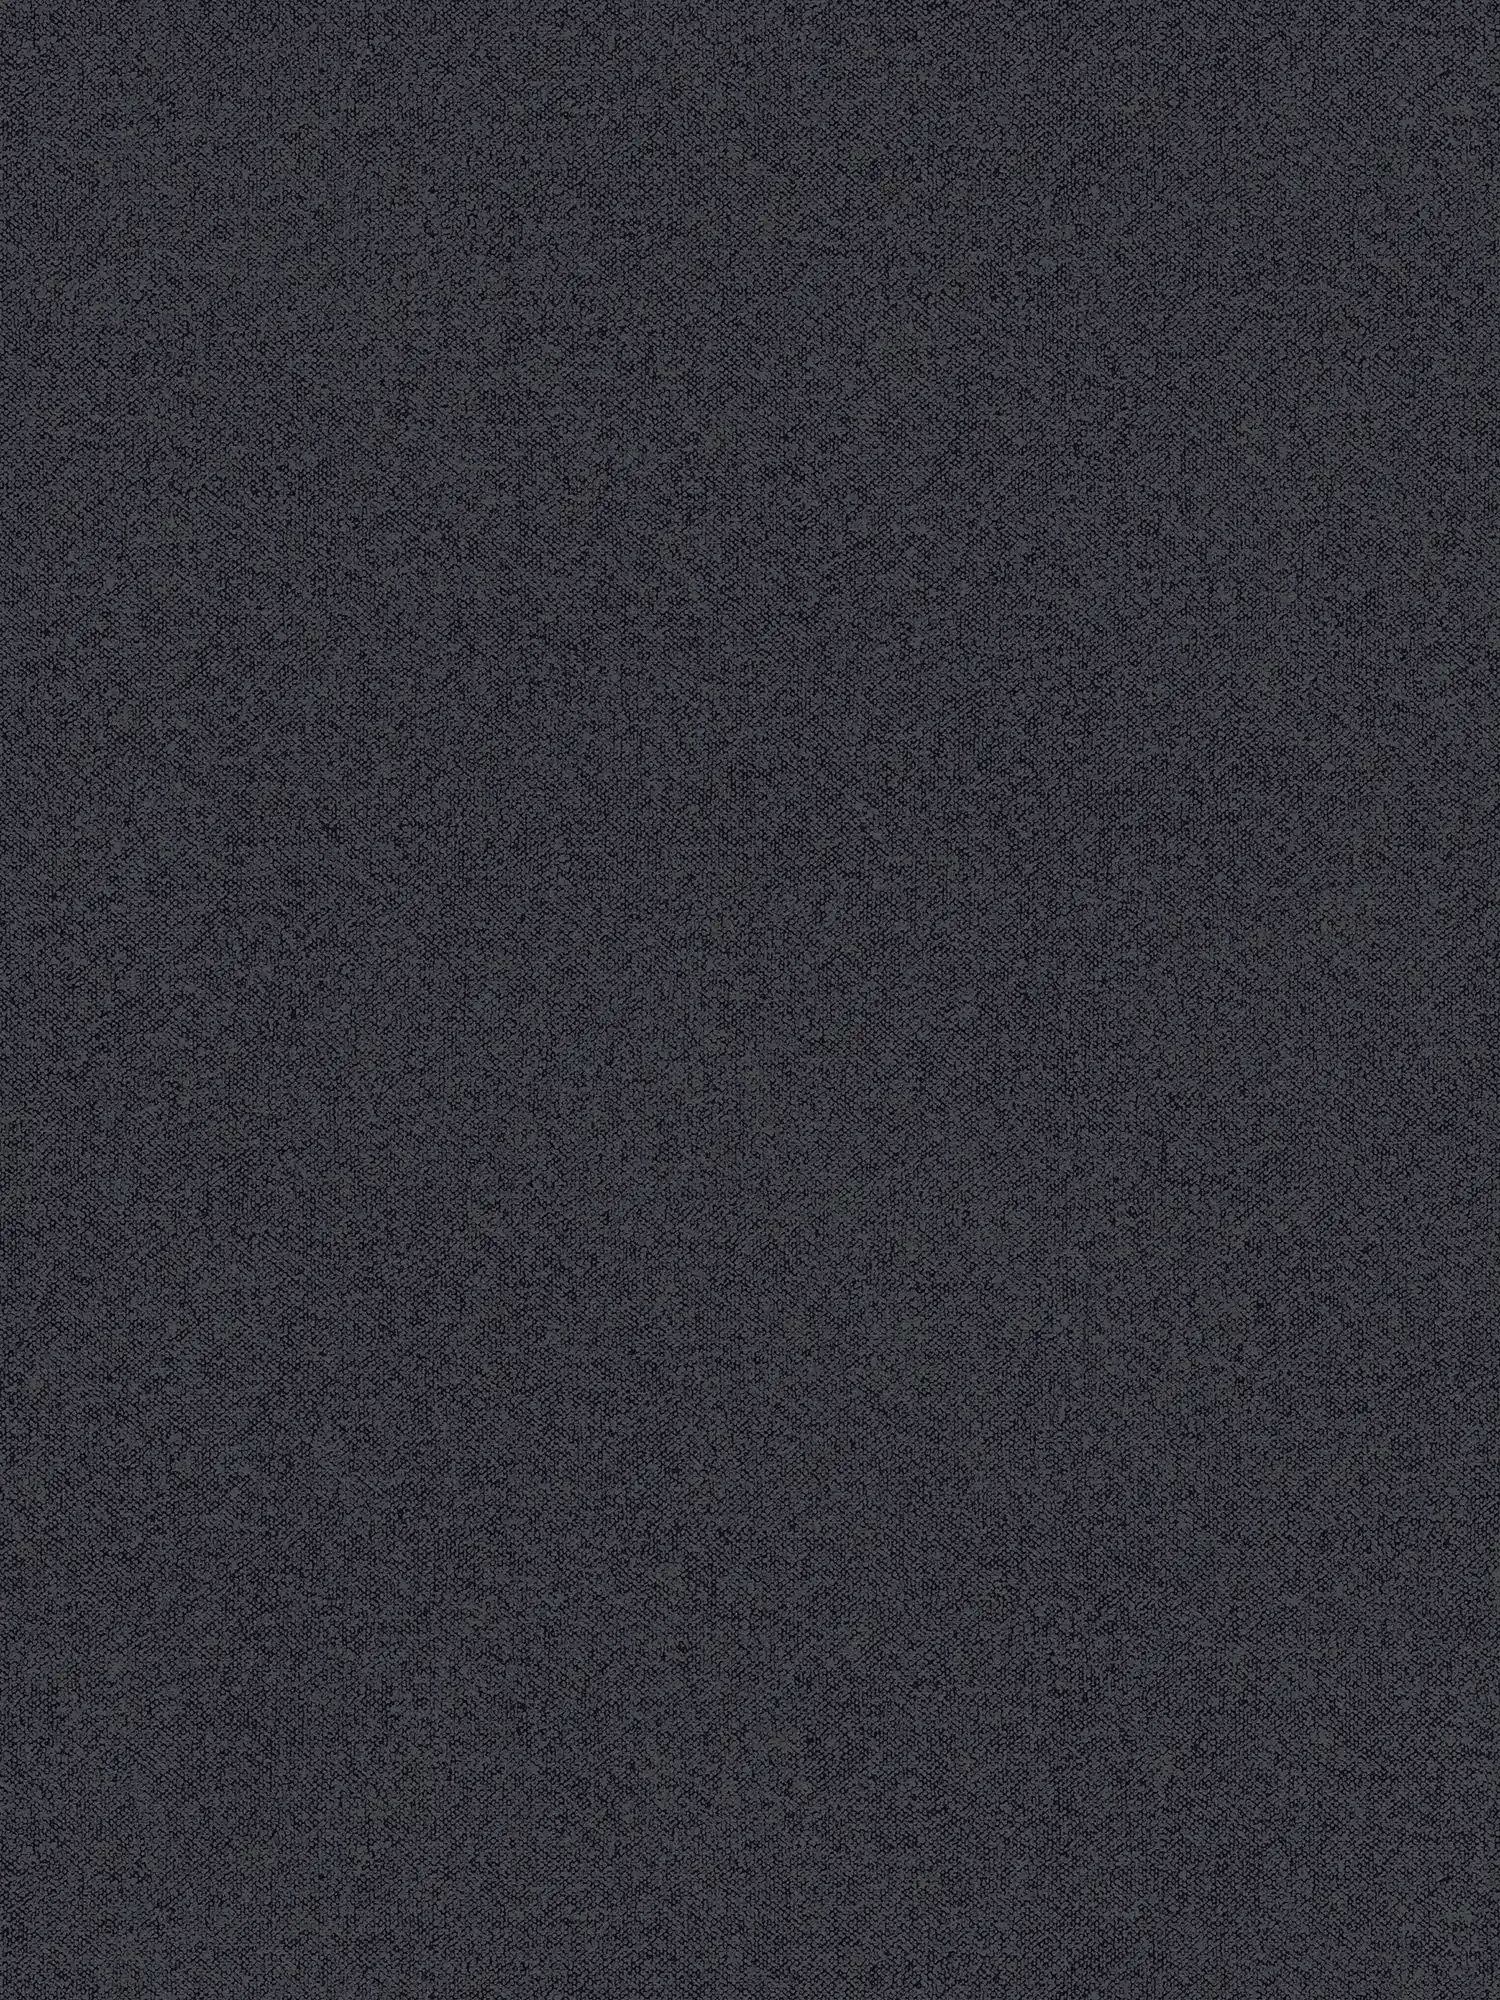 structuurbehang effen met linnenlook - zwart, grijs
